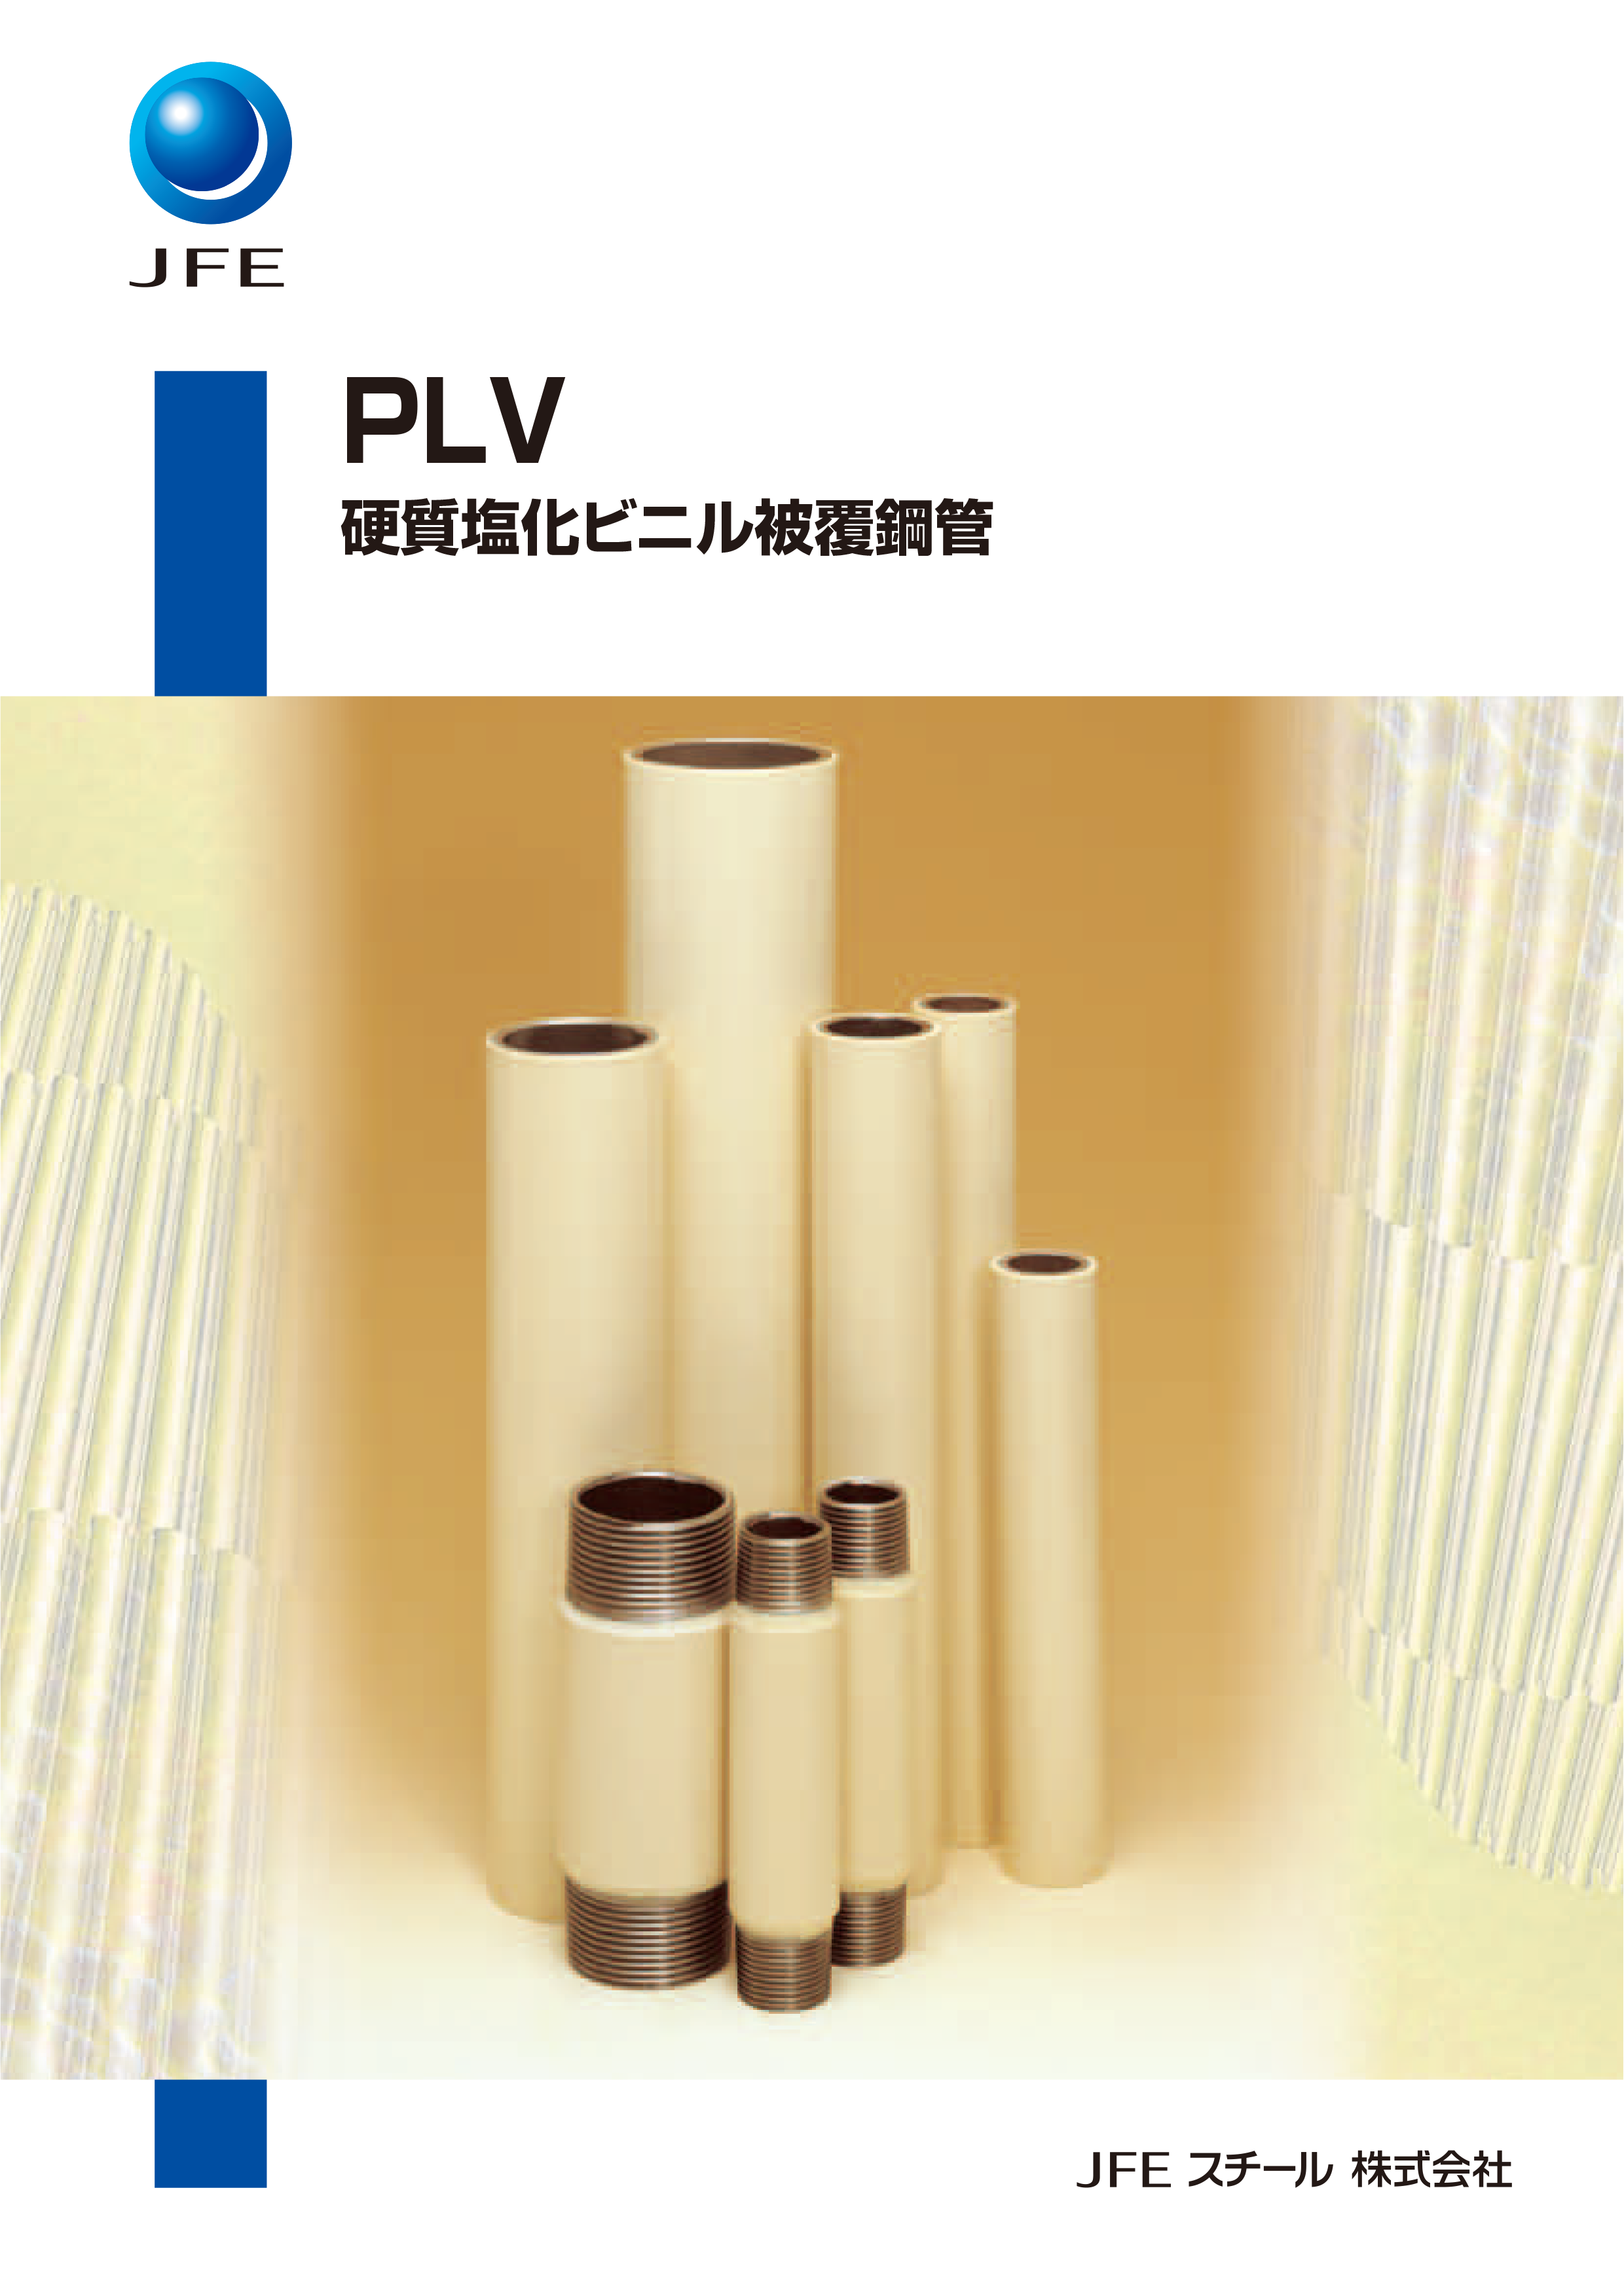 硬質塩化ビニル被覆鋼管/PLV